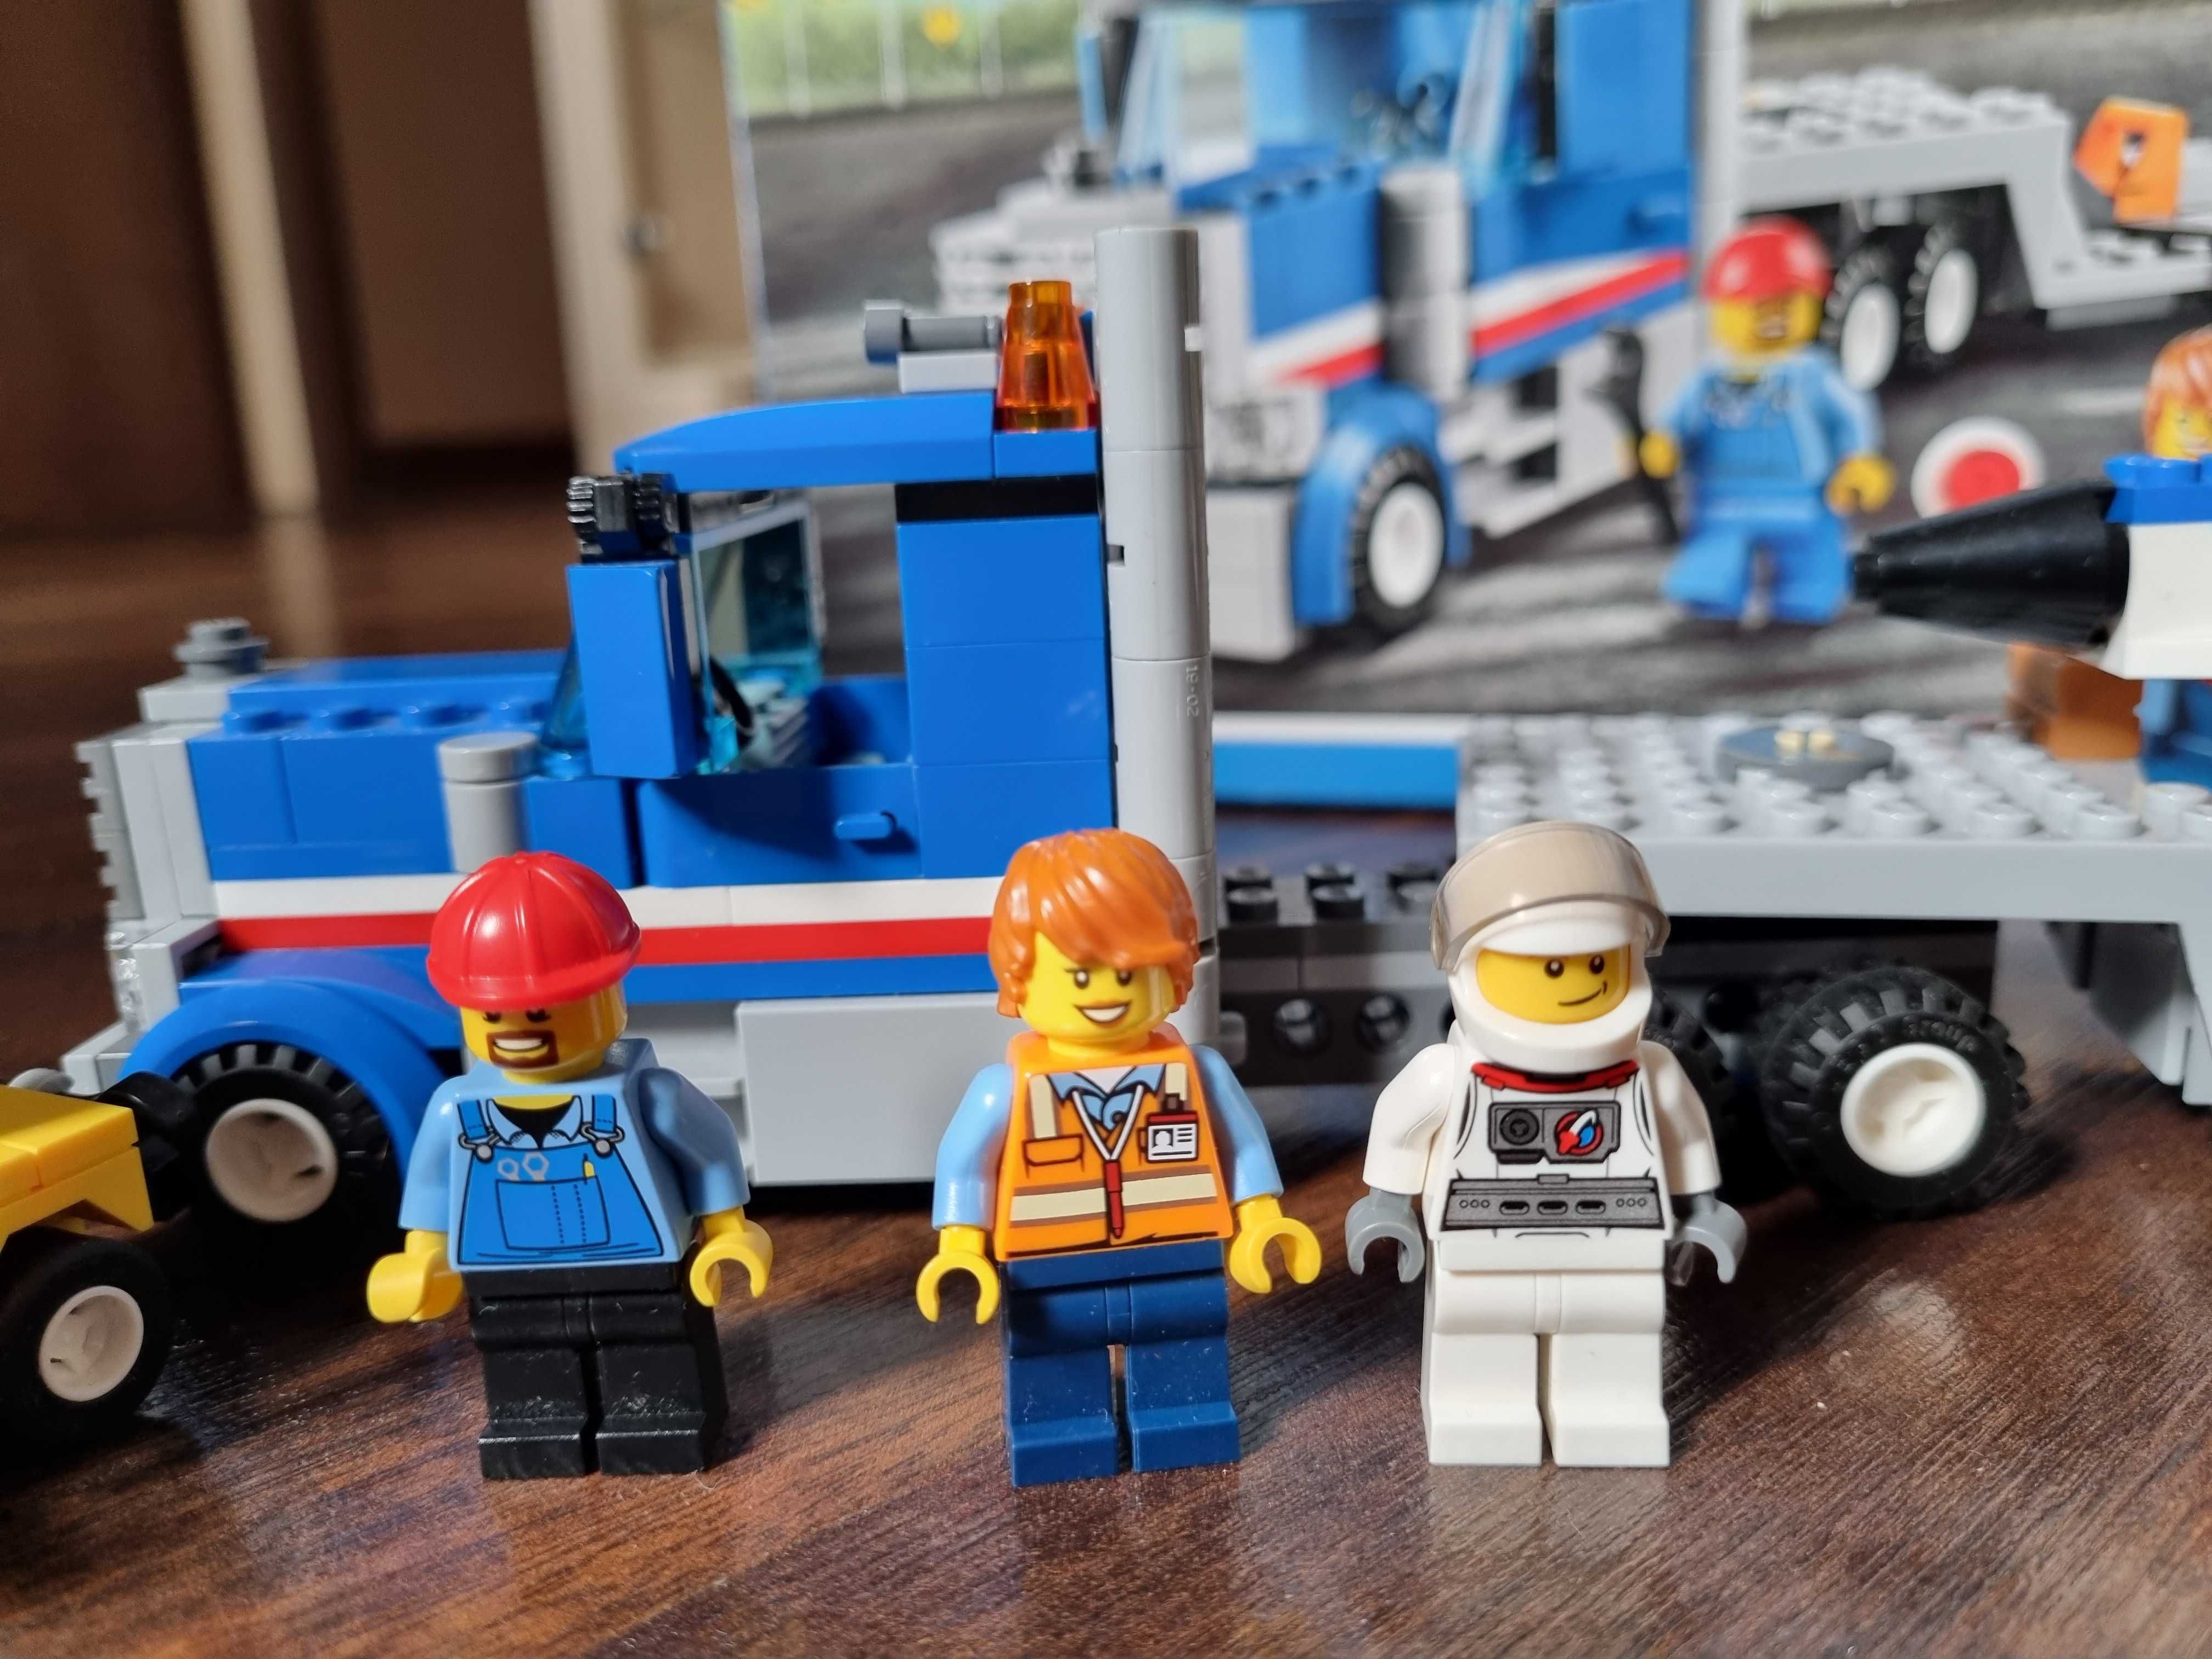 LEGO 60079 transporter odrzutowca